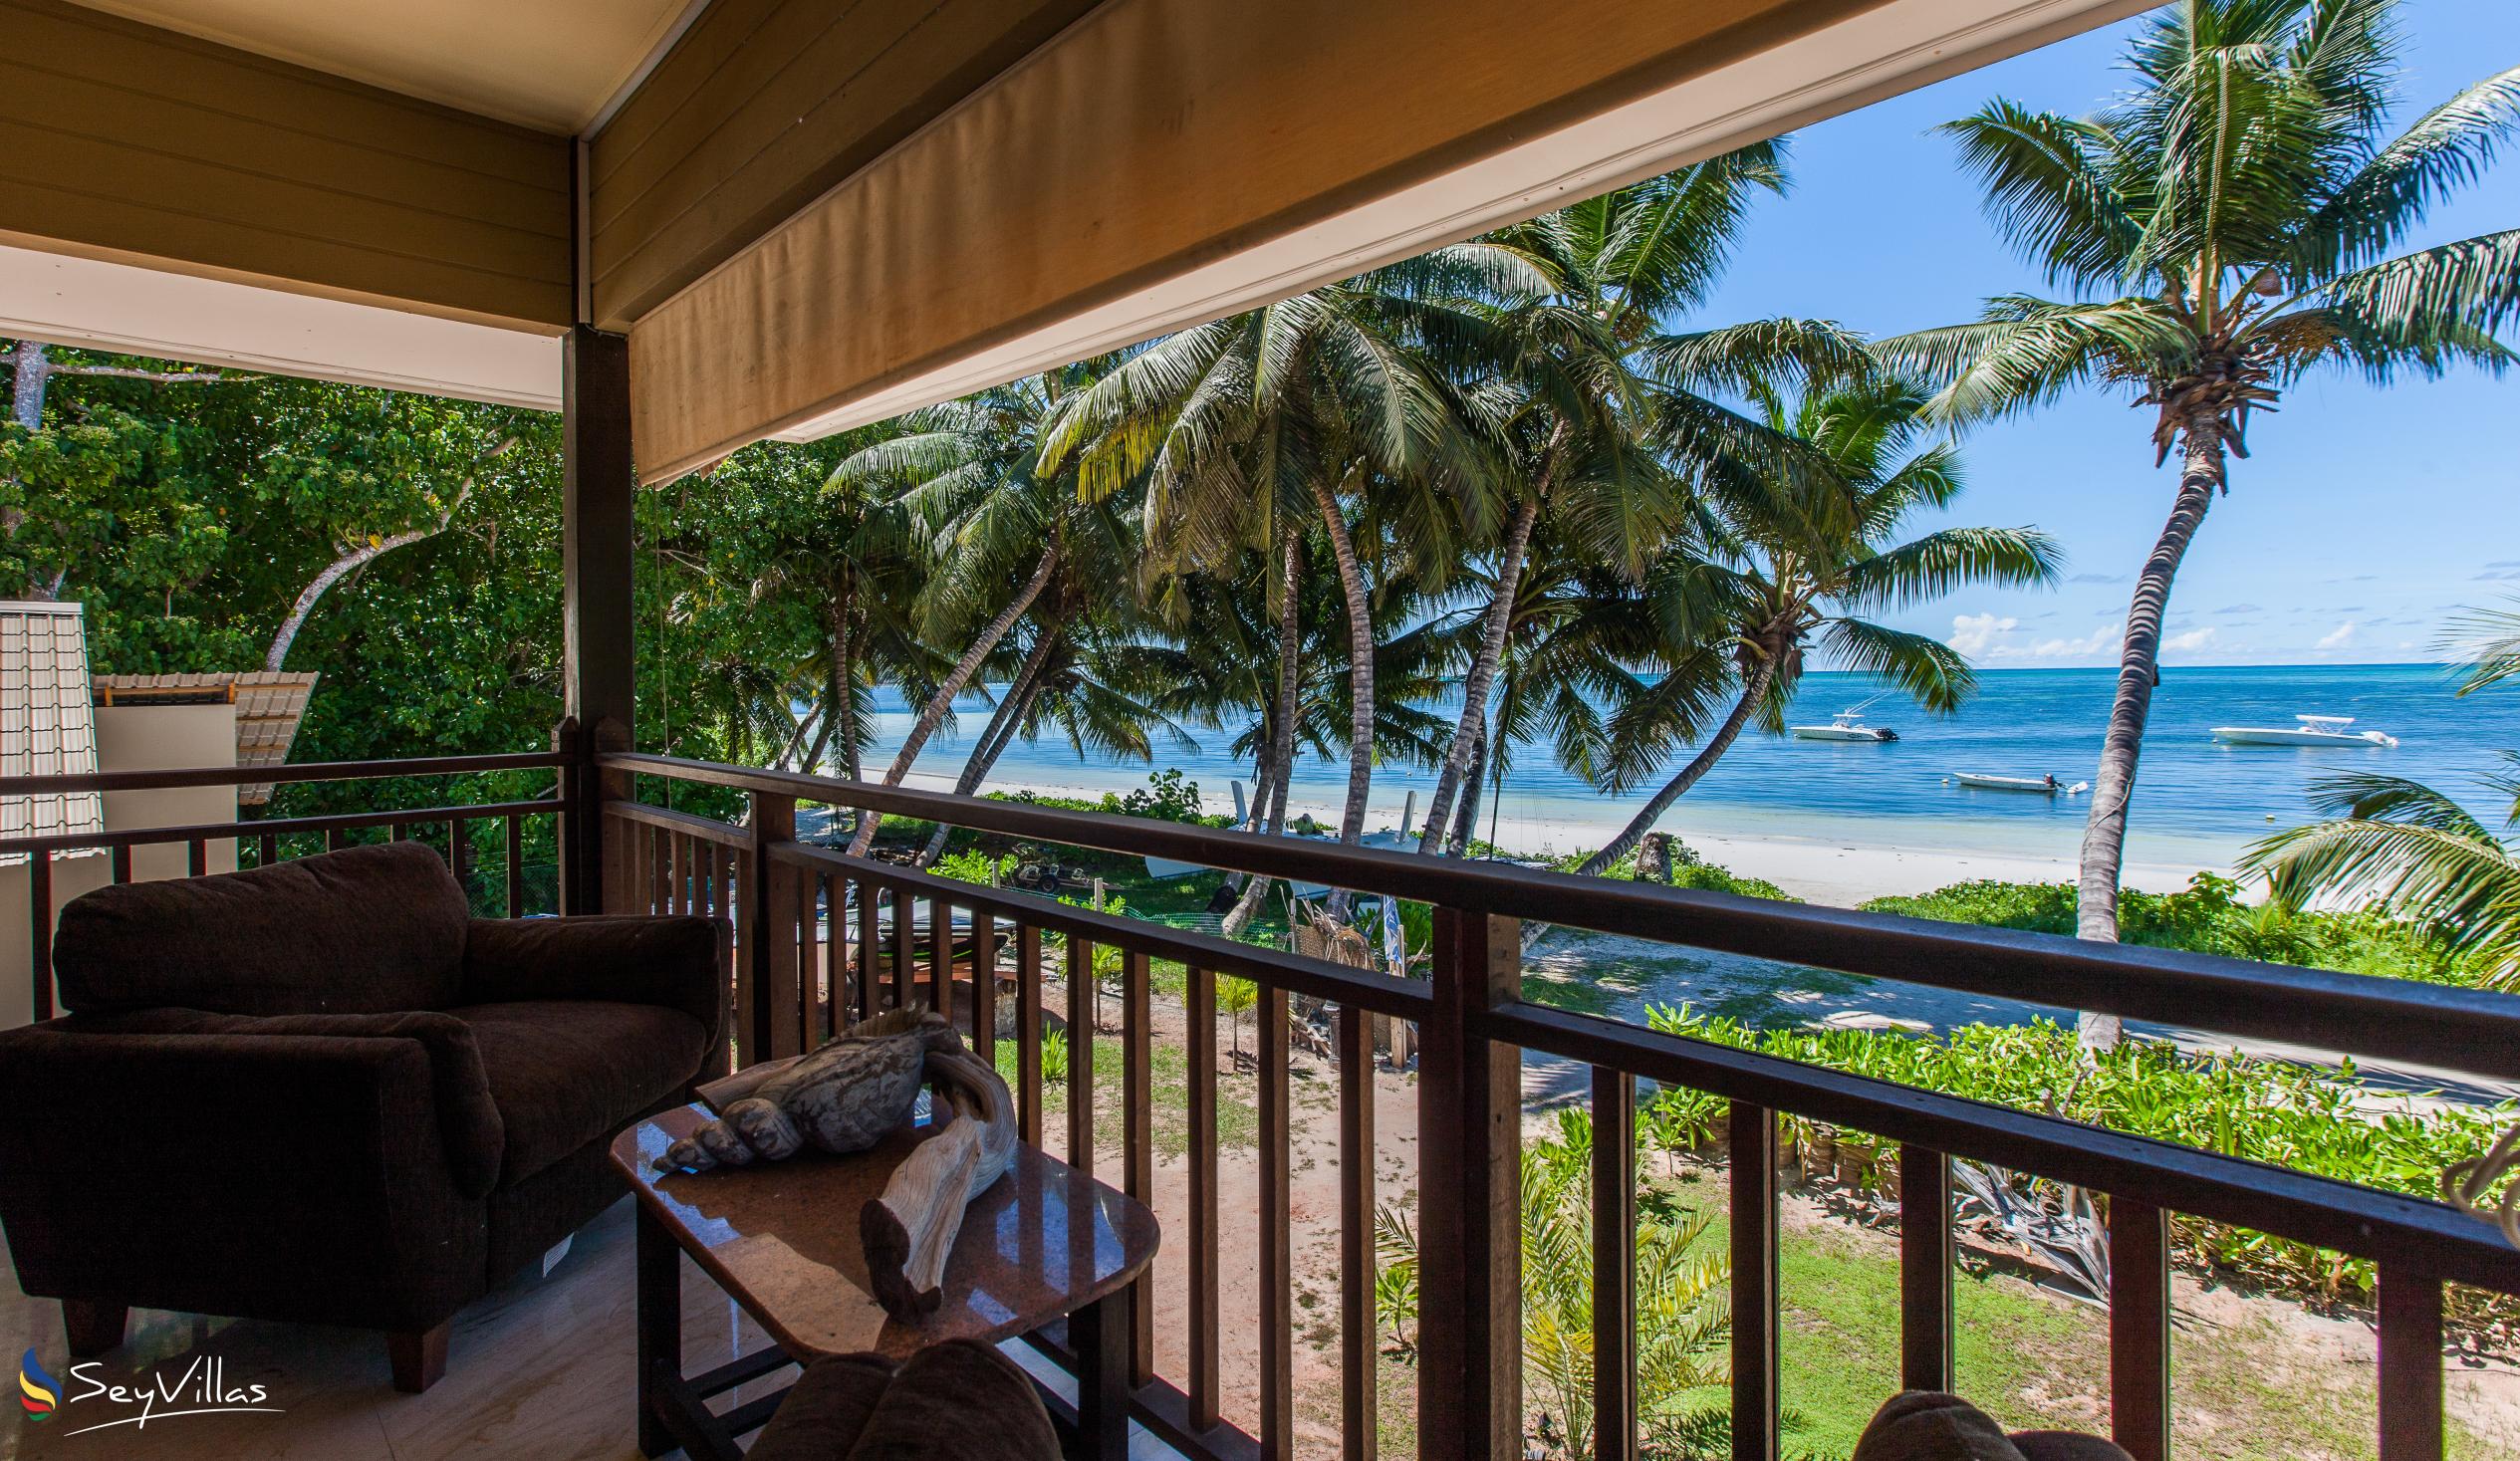 Foto 64: Villas des Alizes - Strand Suite - Praslin (Seychellen)